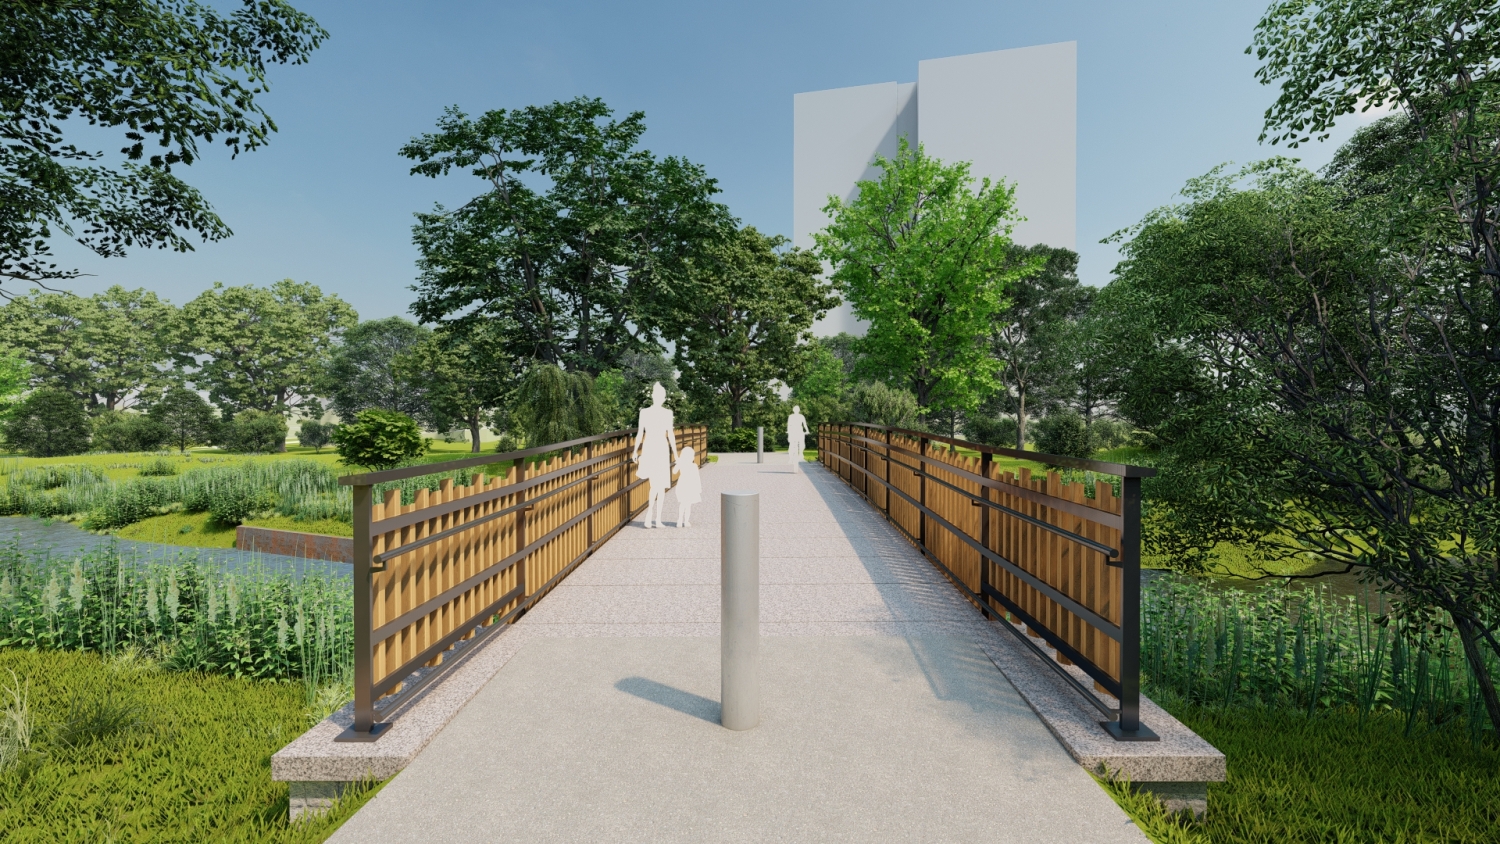 Visualisierung Südparkbrücke: Blick auf Brücke Richtung Hochhaus